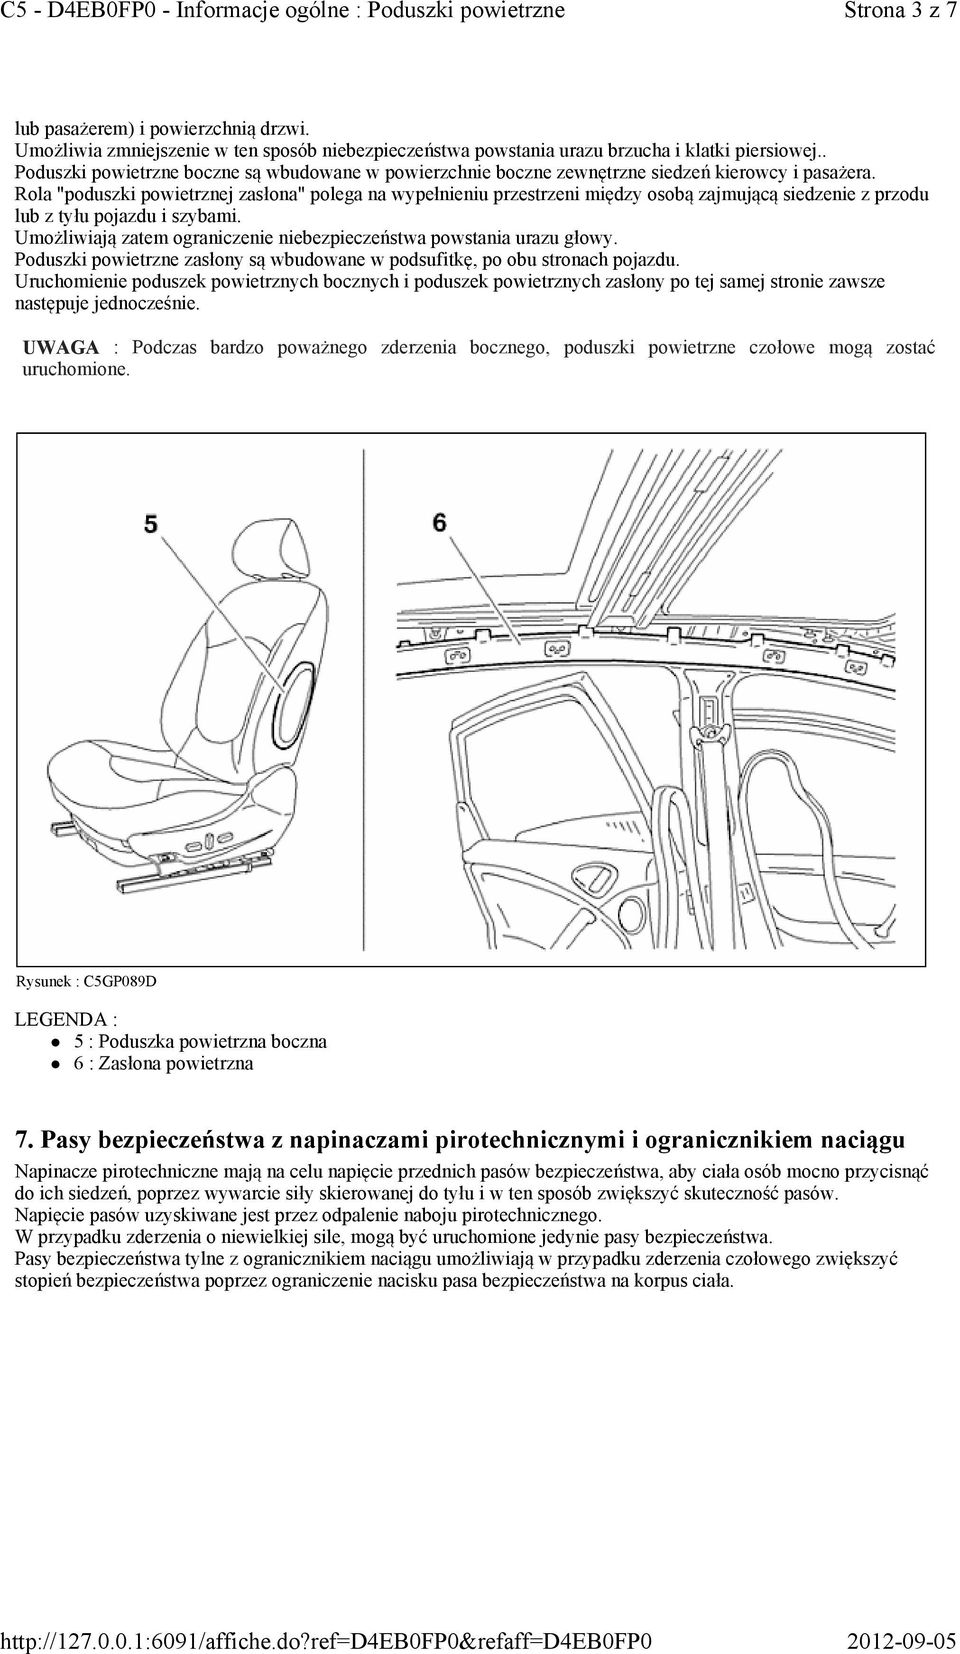 Rola "poduszki powietrznej zasłona" polega na wypełnieniu przestrzeni między osobą zajmującą siedzenie z przodu lub z tyłu pojazdu i szybami.